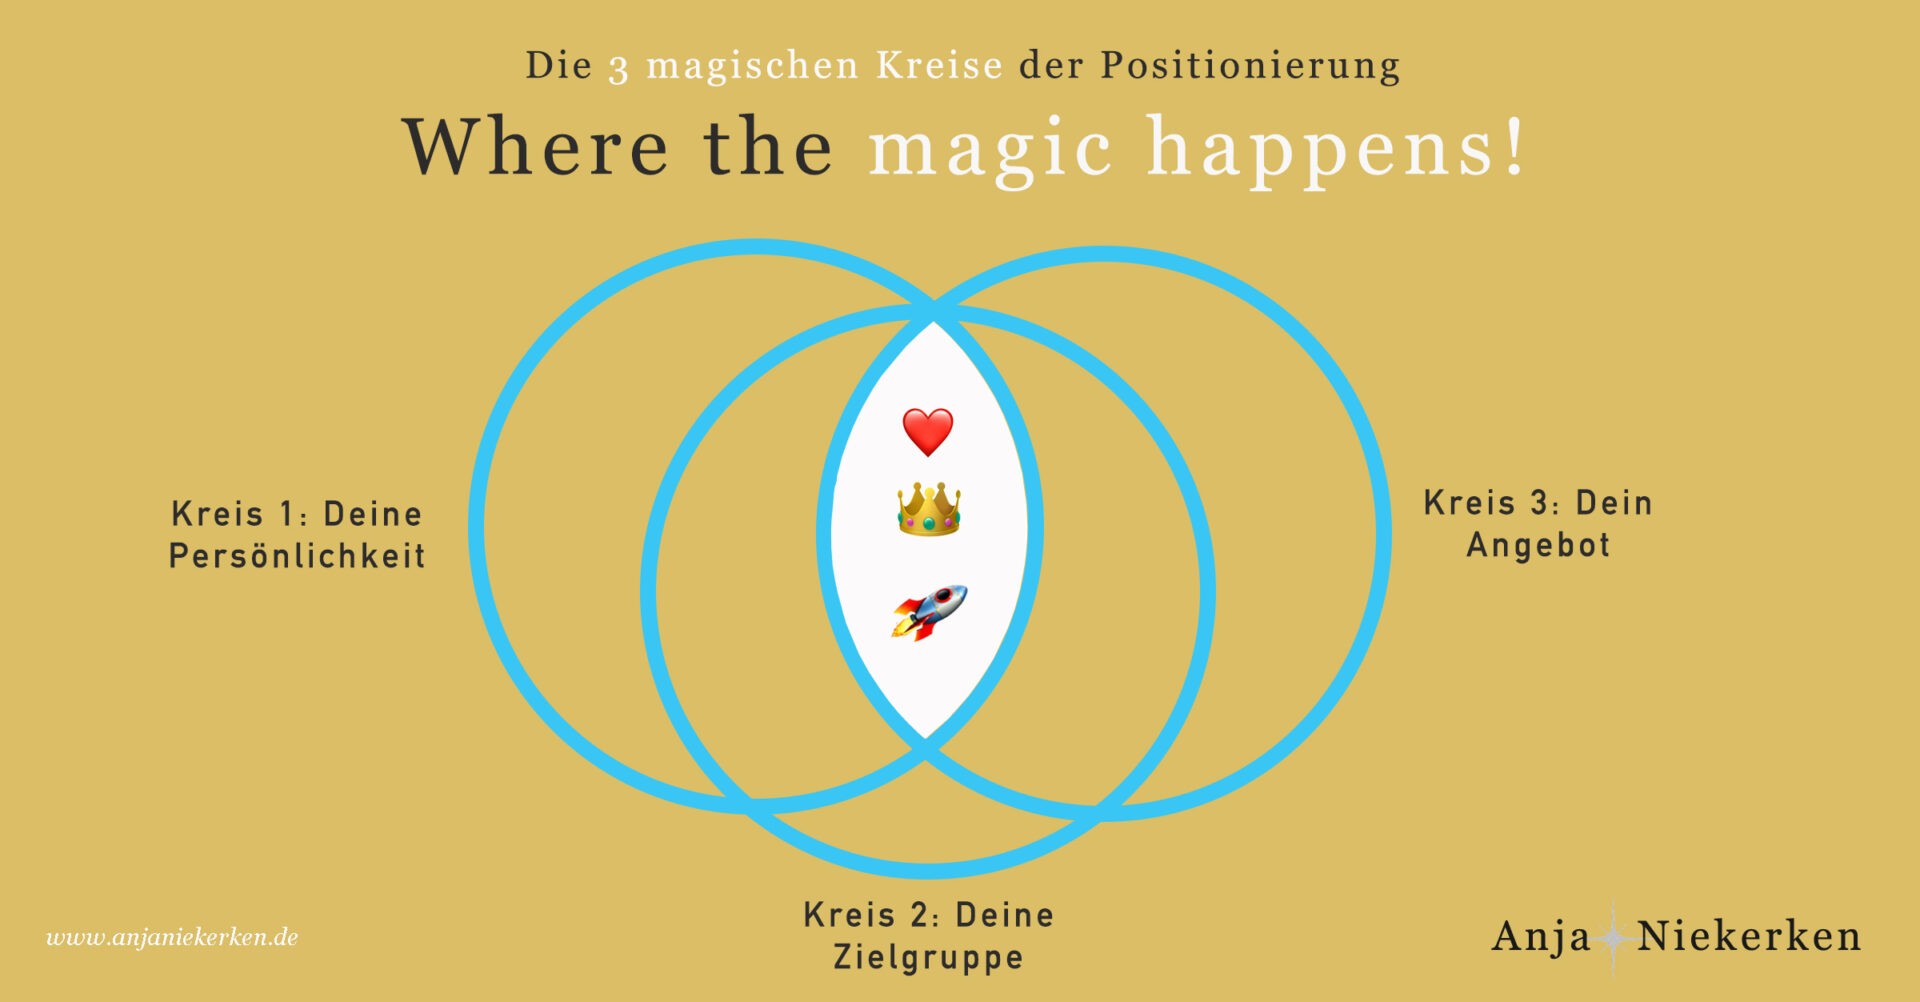 Die magischen 3 Kreise der Positionierung